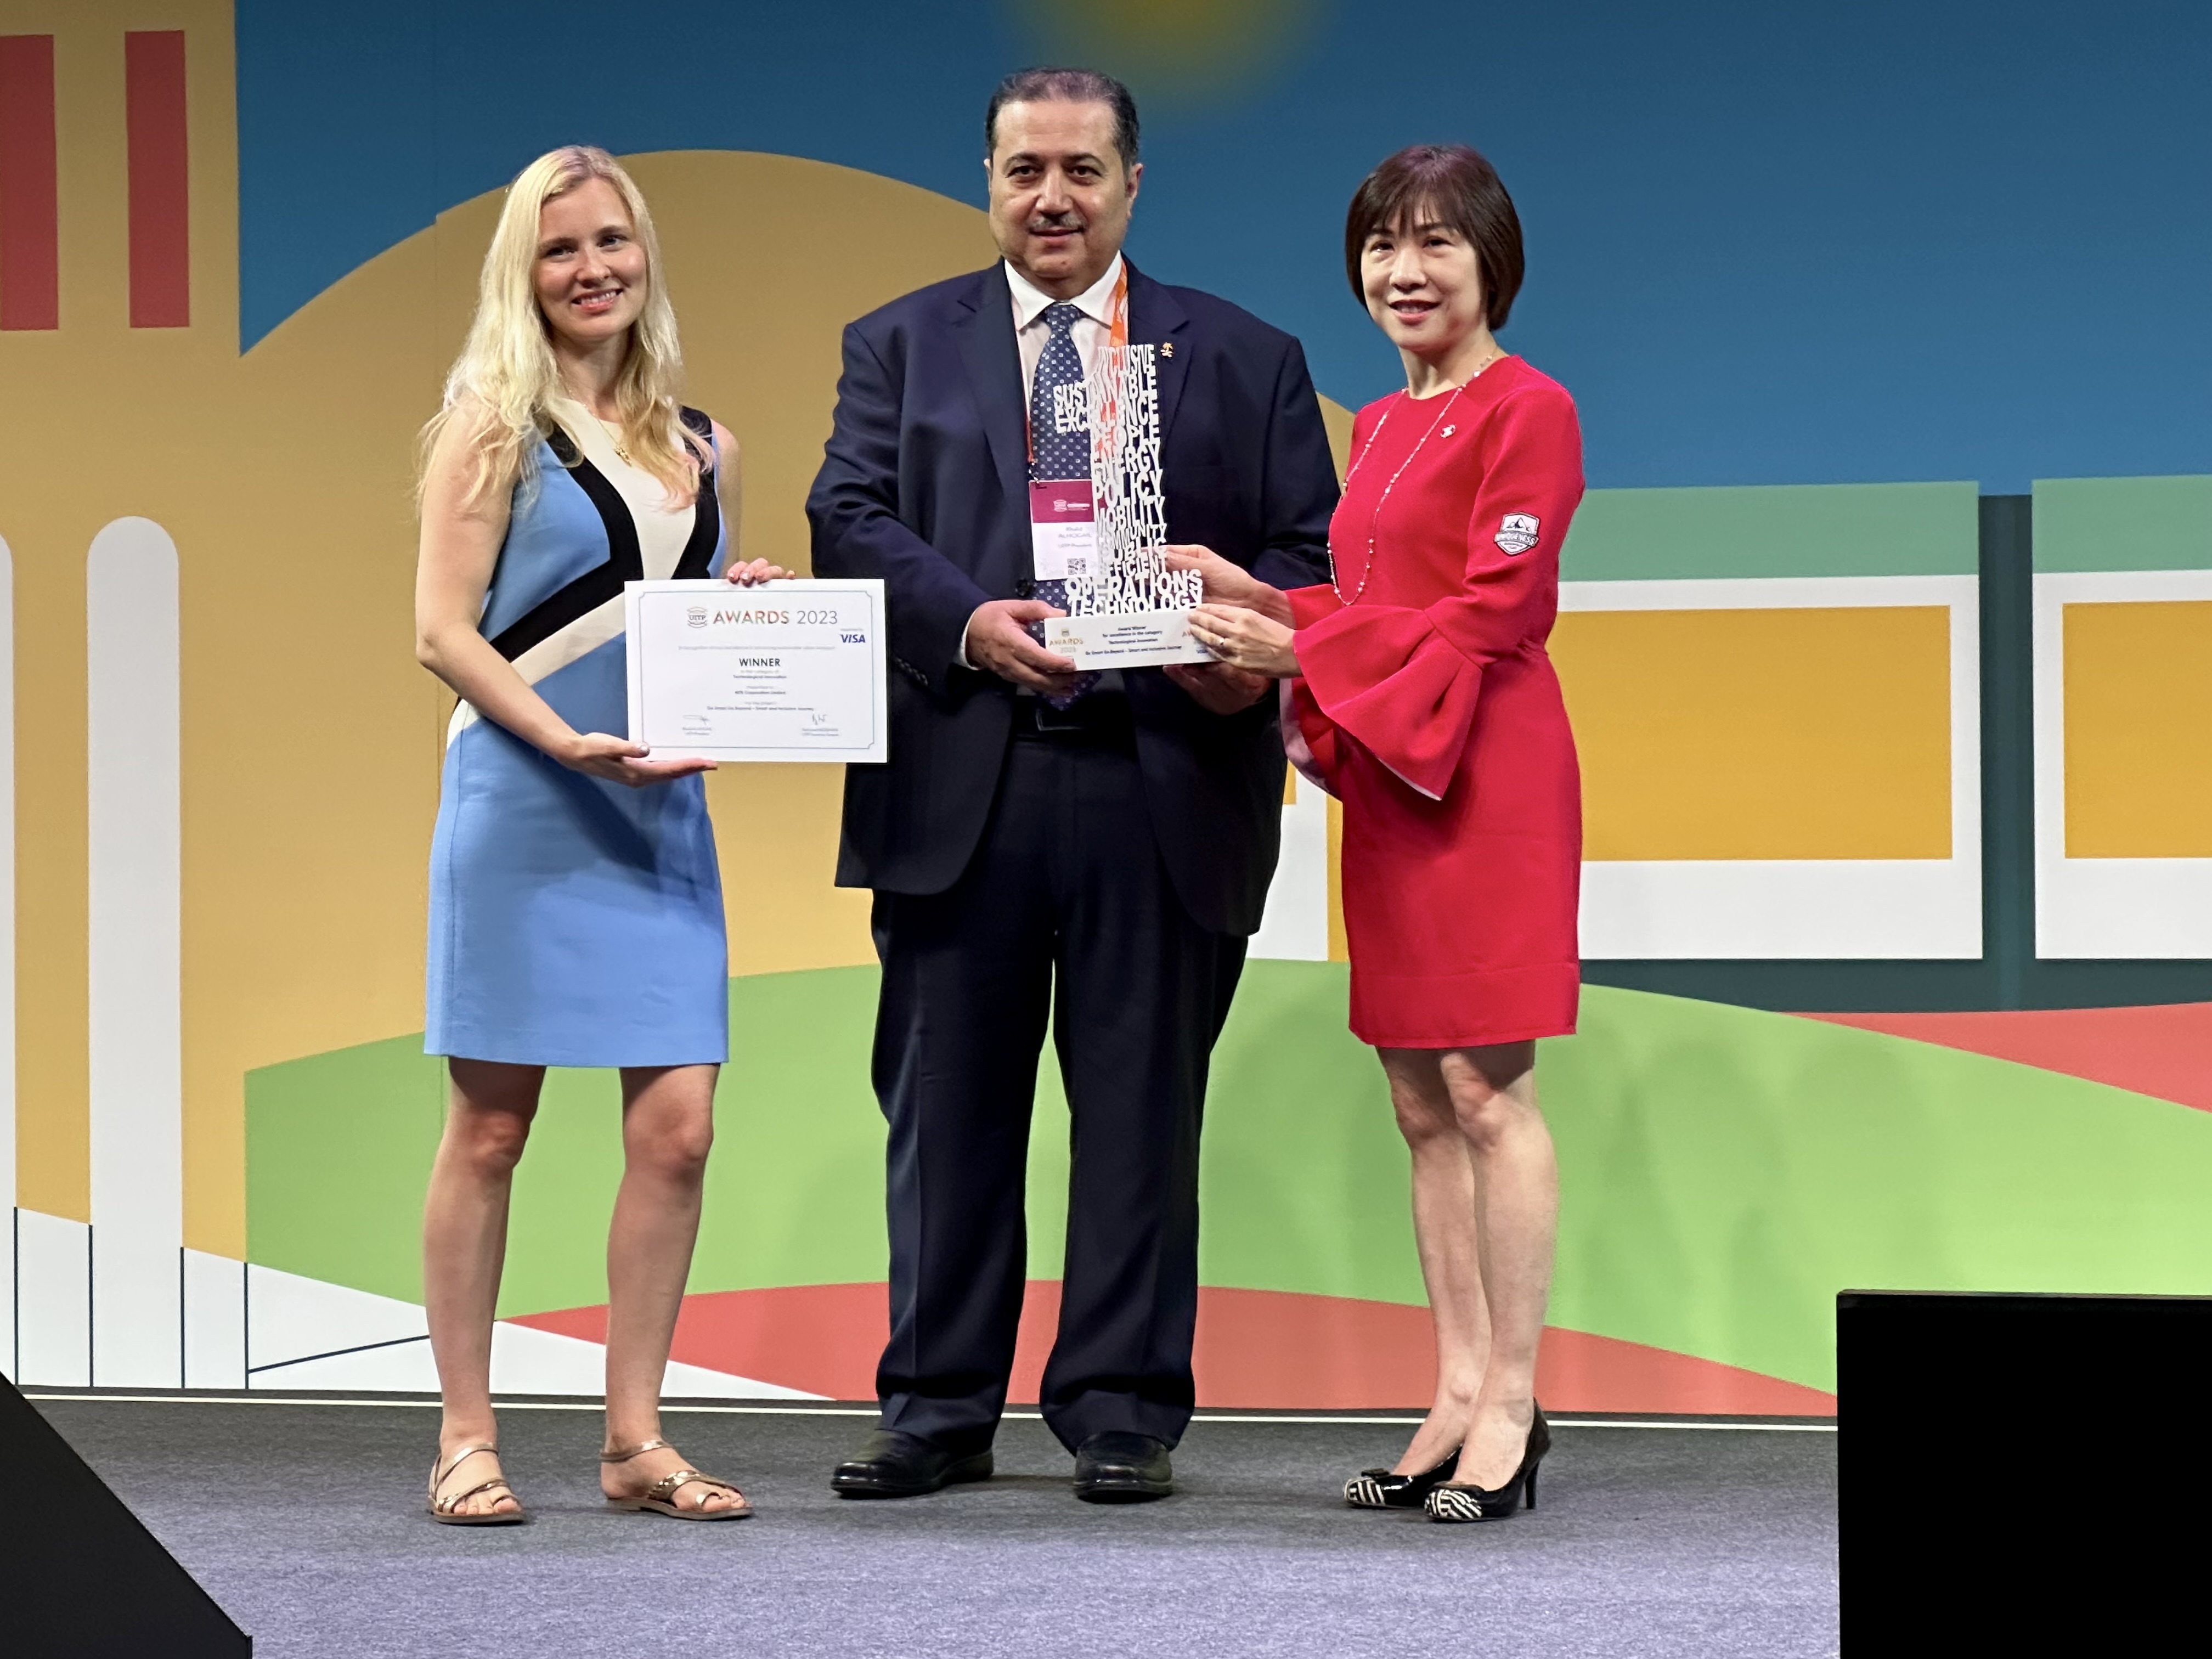 港鐵公司代表（右）在西班牙巴塞隆拿舉行的全球公共交通峰會中憑「載．向未來—智慧出行及共融企劃」獲頒科技創新組別大獎。